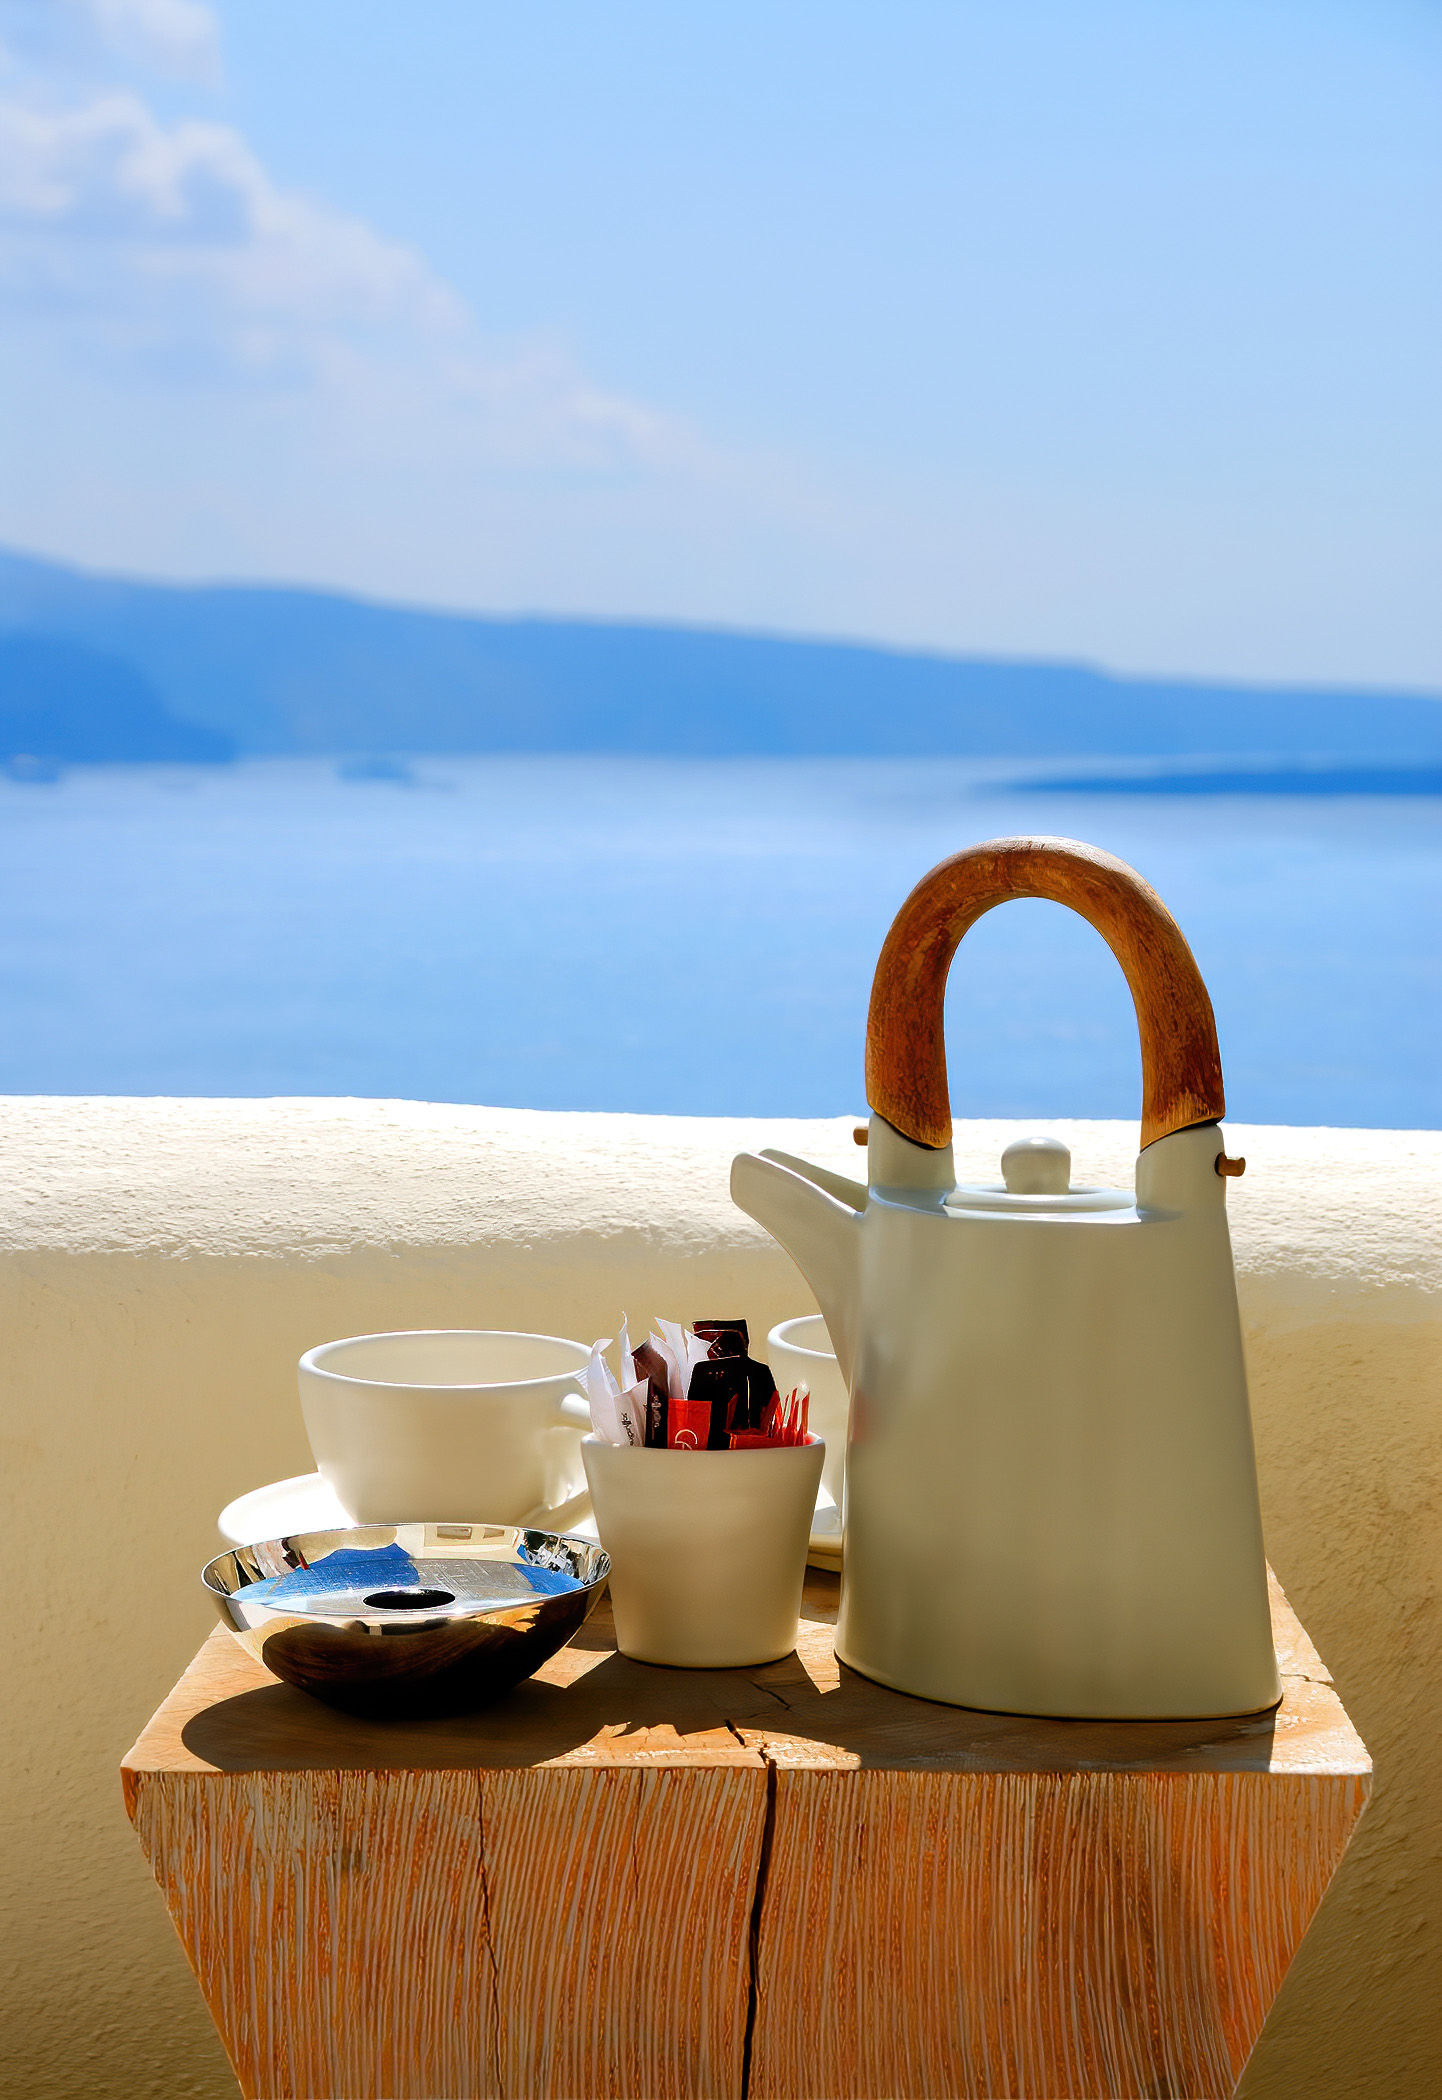 Mystique Hotel Santorini – Oia, Santorini Island, Greece – Gourmet Coffee Service